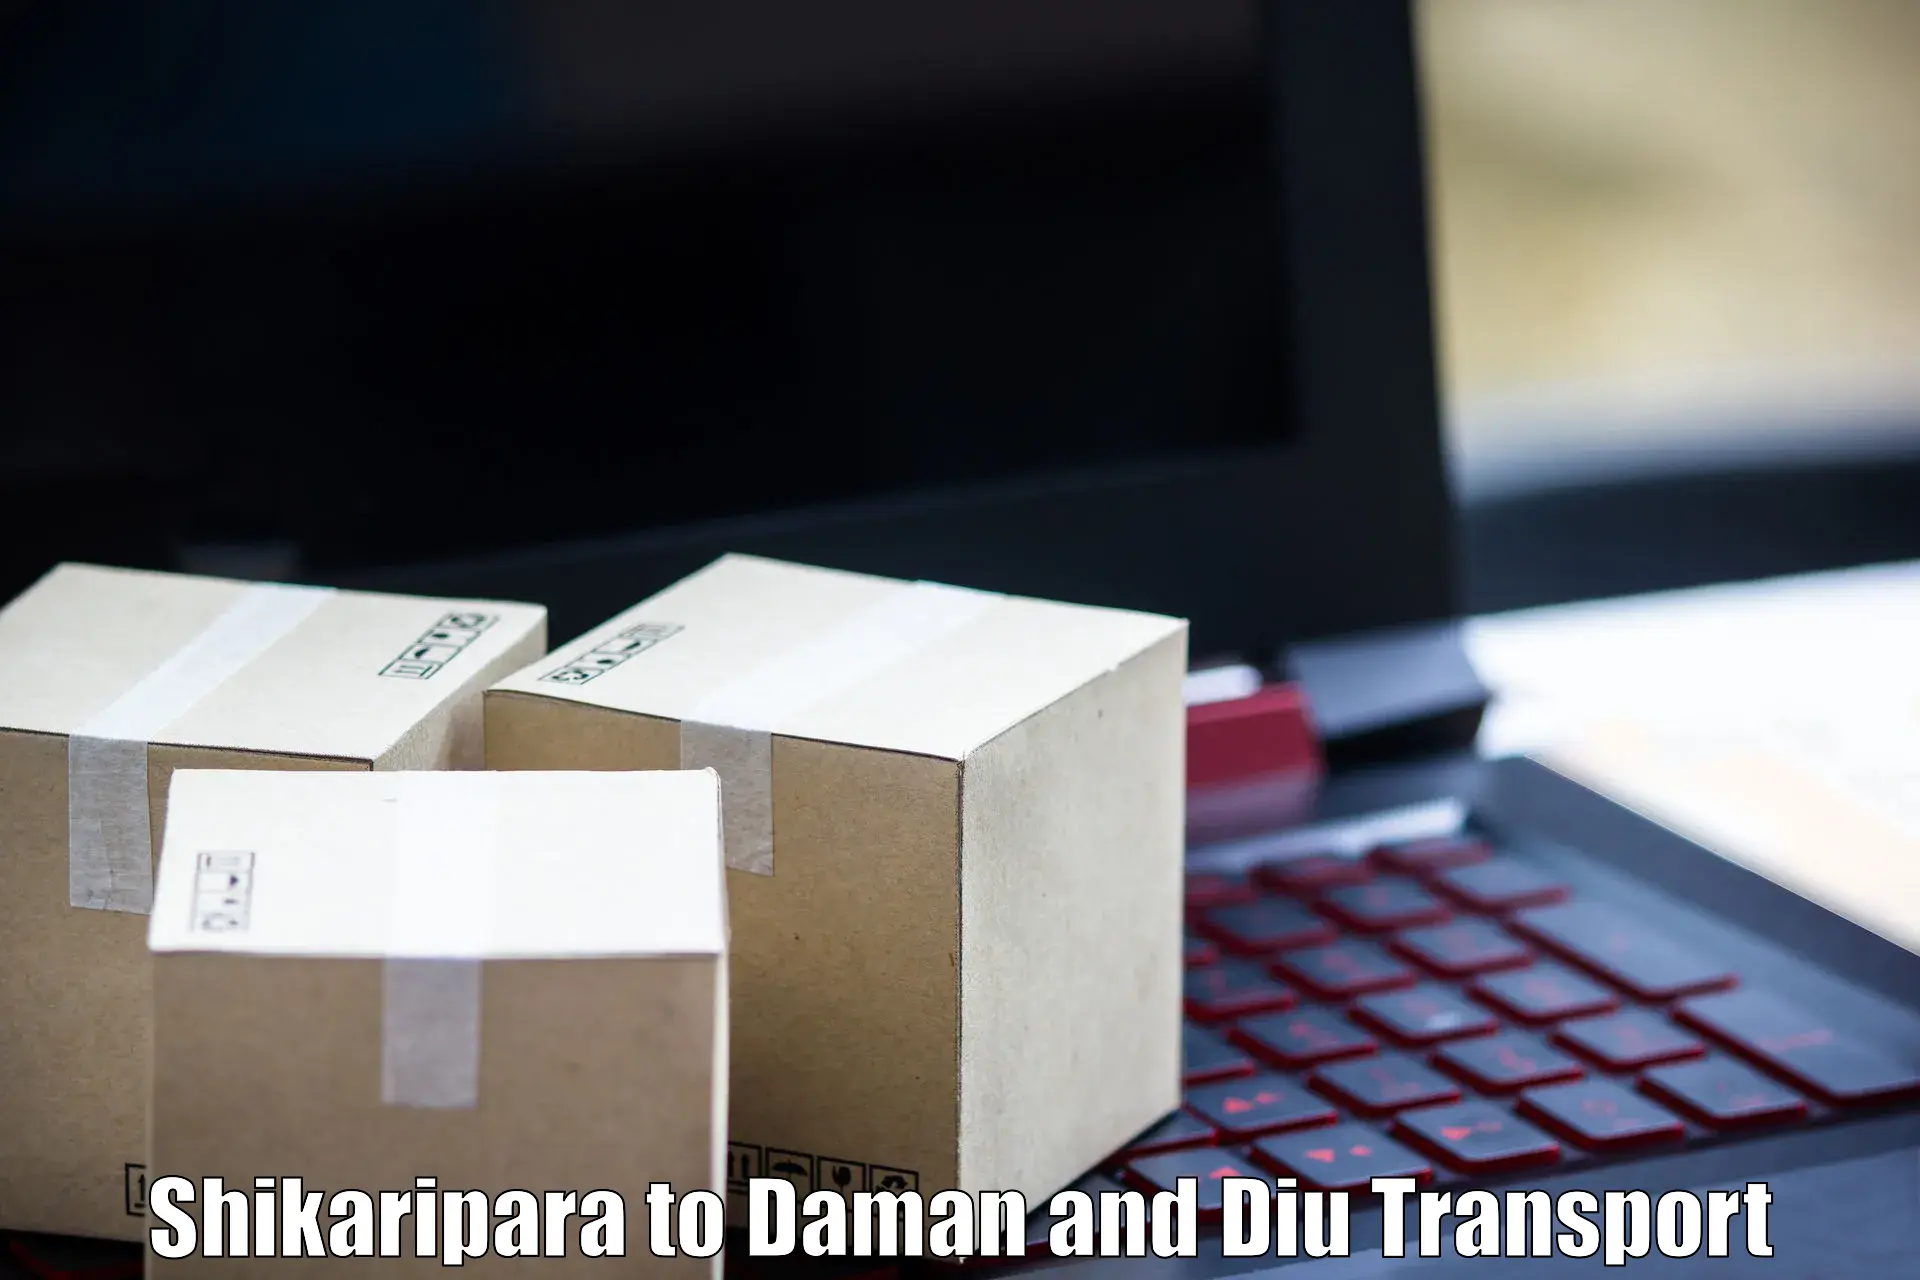 Shipping services in Shikaripara to Daman and Diu